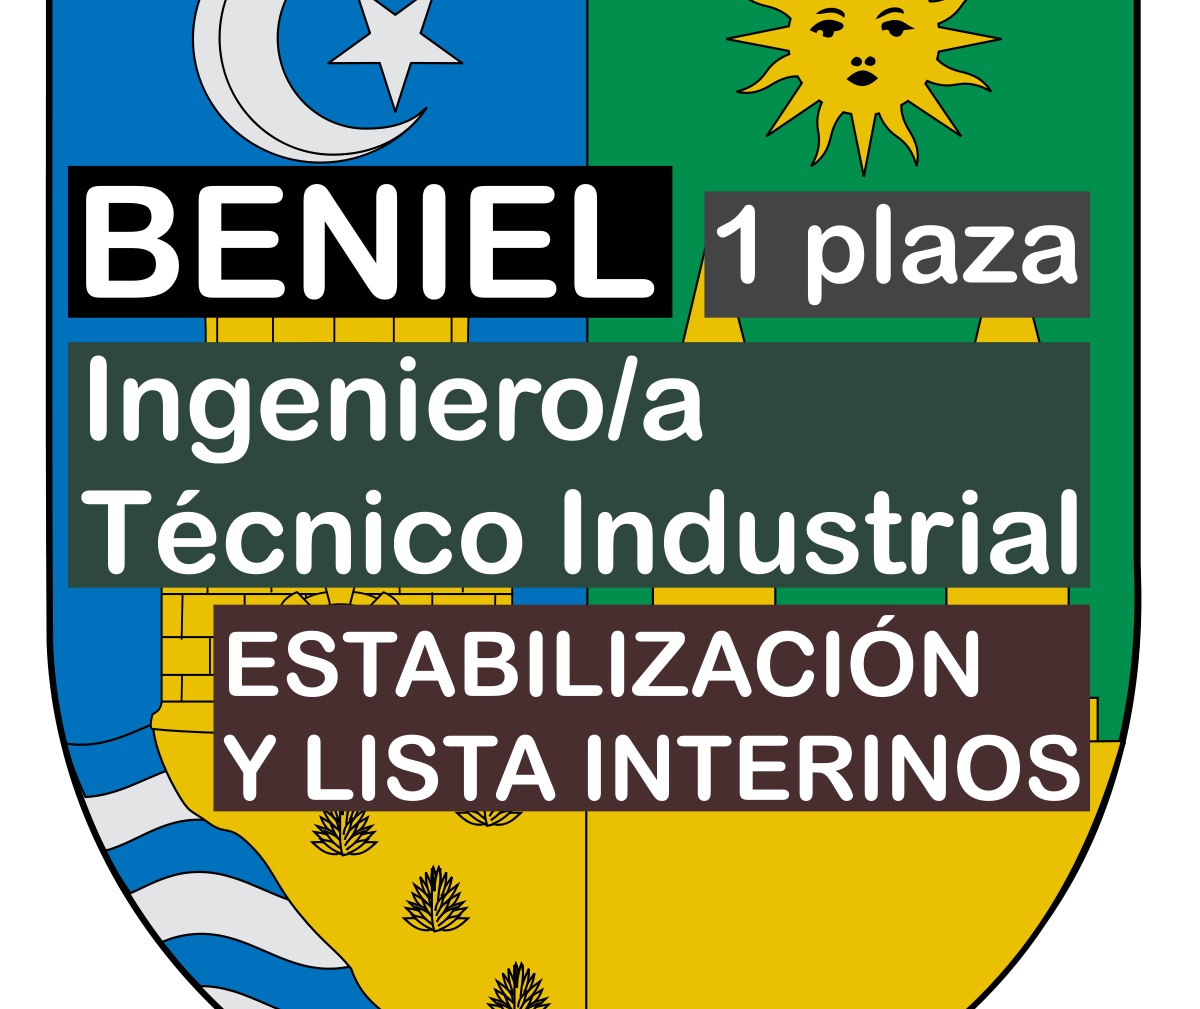 1 Ingeniero/a técnico industrial en Beniel